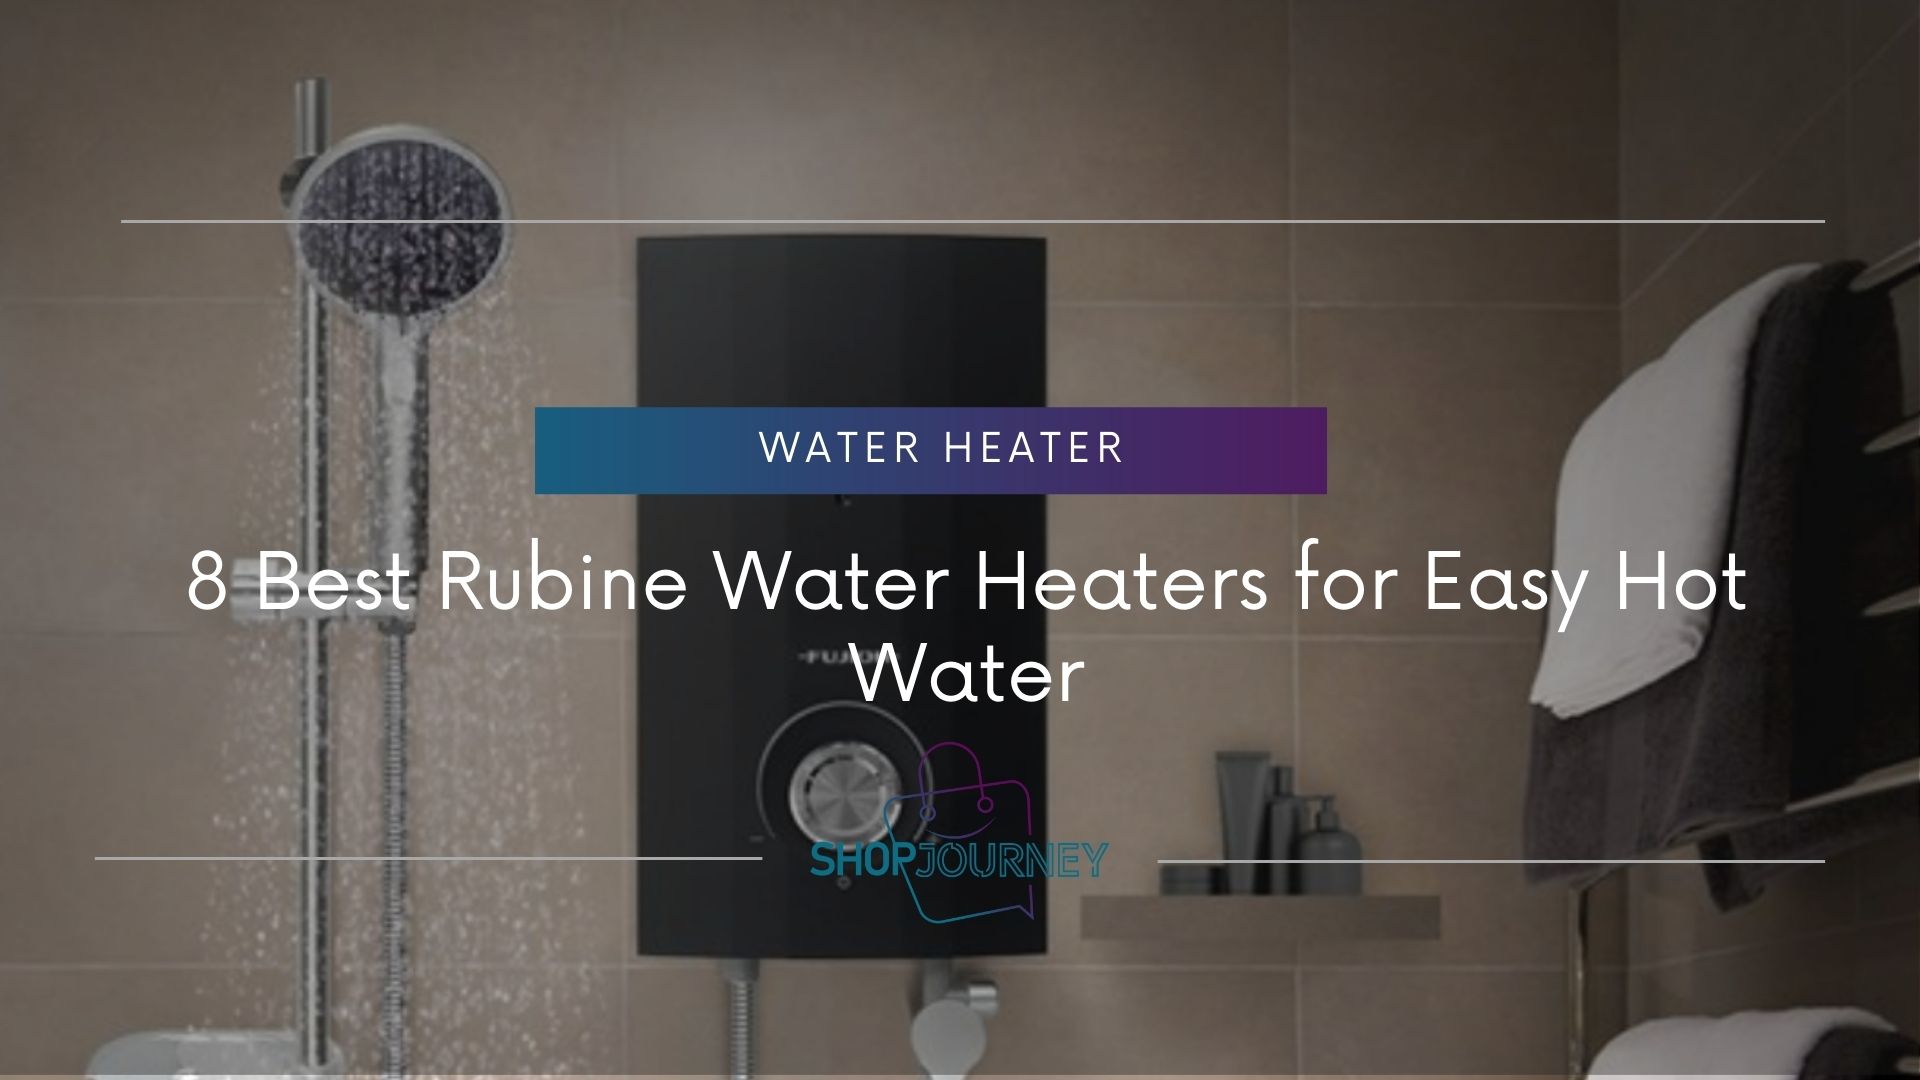 Rubine Water Heater - Shop Journey